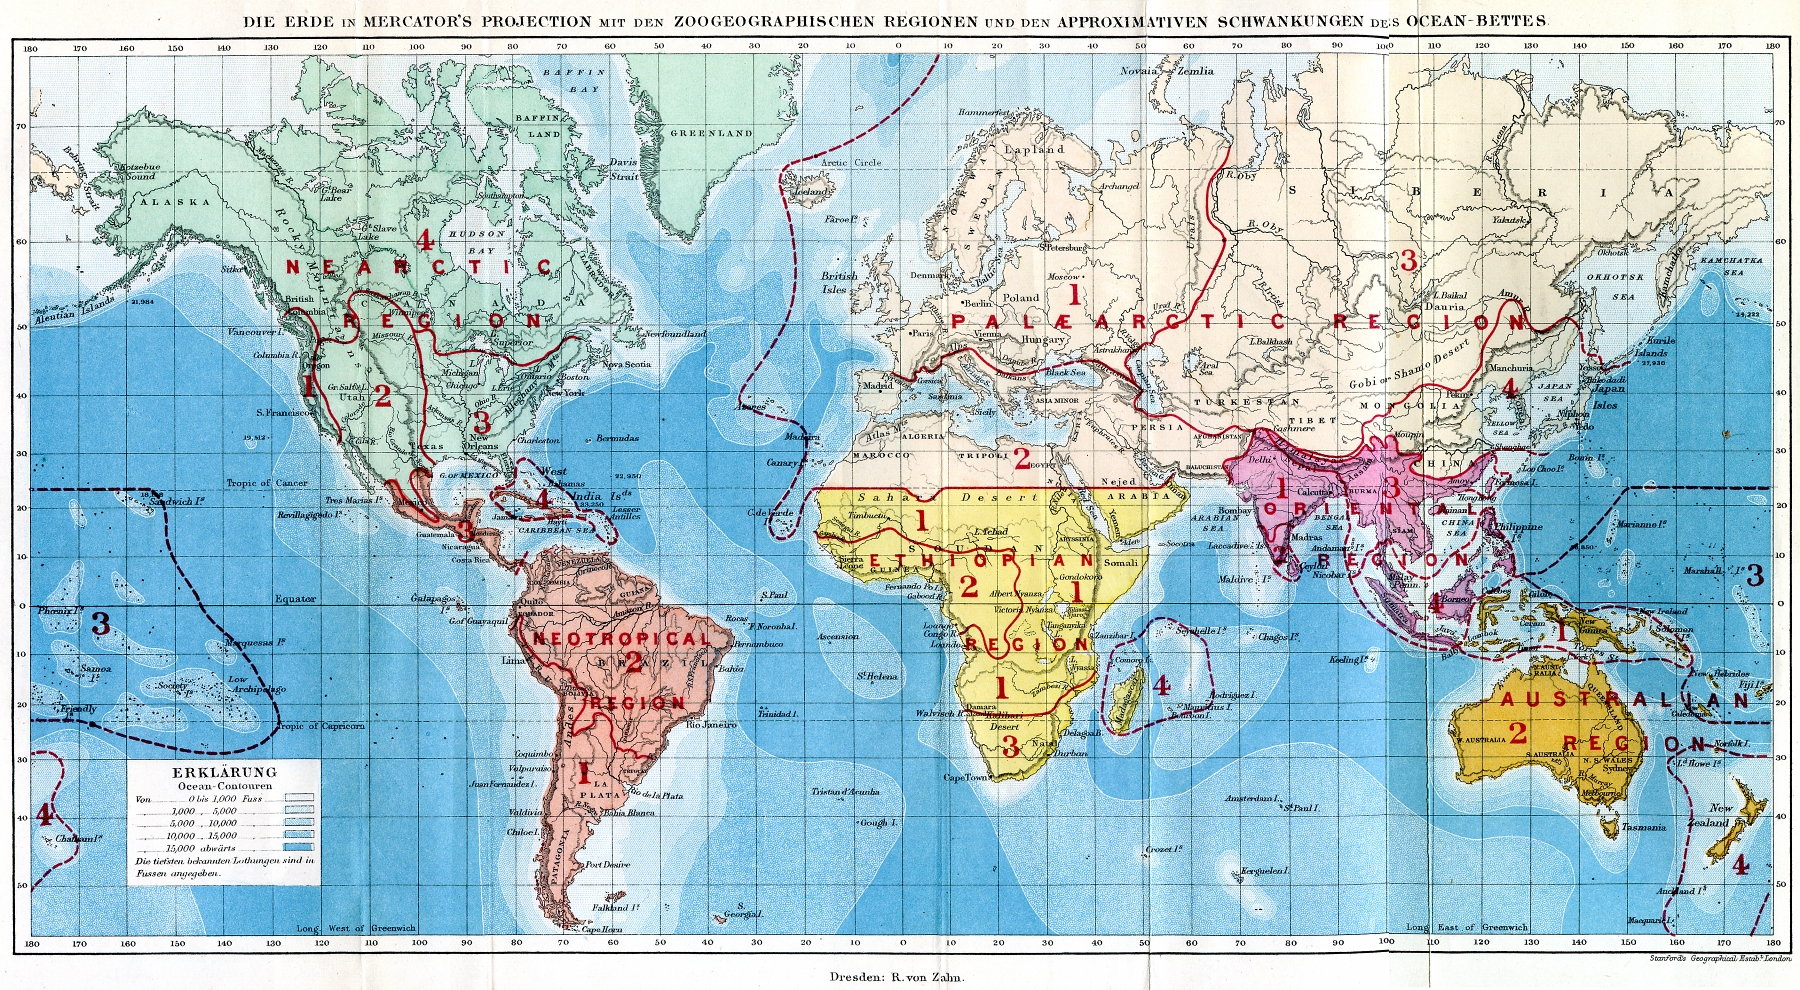 Mapa do mundo retirado do livro "The geographical distribution of Animals", mostrando as seis regiões biogeográficas definidas por Alfred R. Wallace (1876).